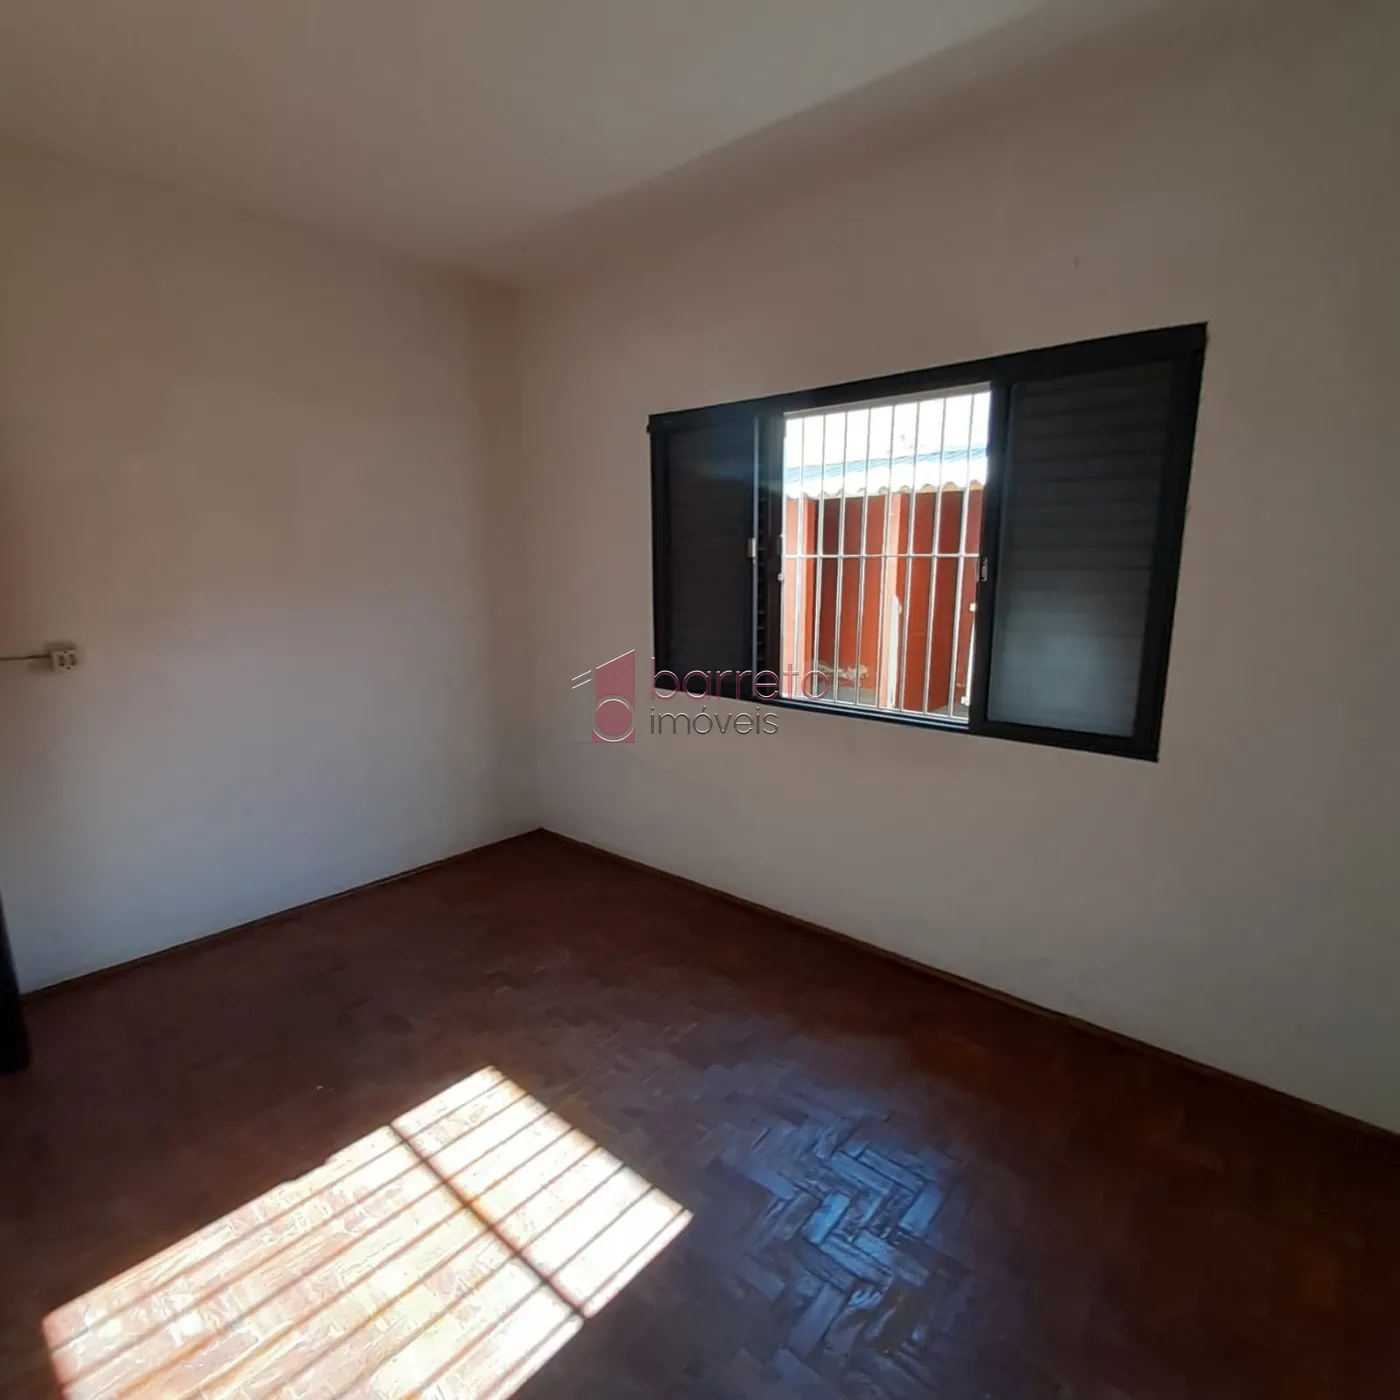 Comprar Casa / Térrea em Jundiaí R$ 750.000,00 - Foto 8